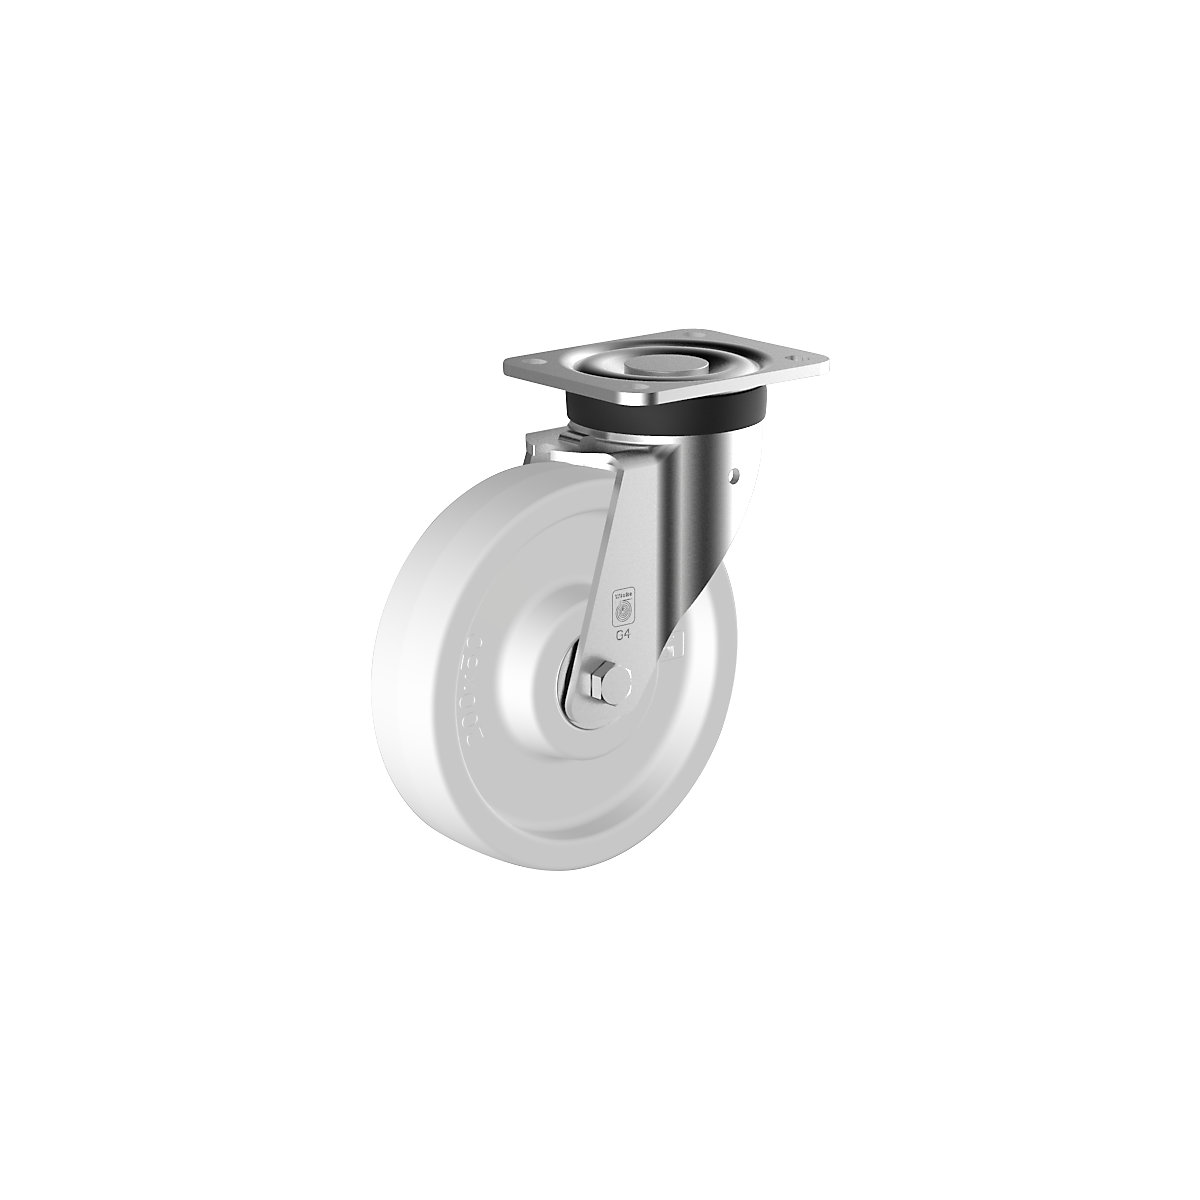 Roulette polyamide – Wicke, Ø x largeur roulette 200 x 50 mm, roulette pivotante, moyeu lisse